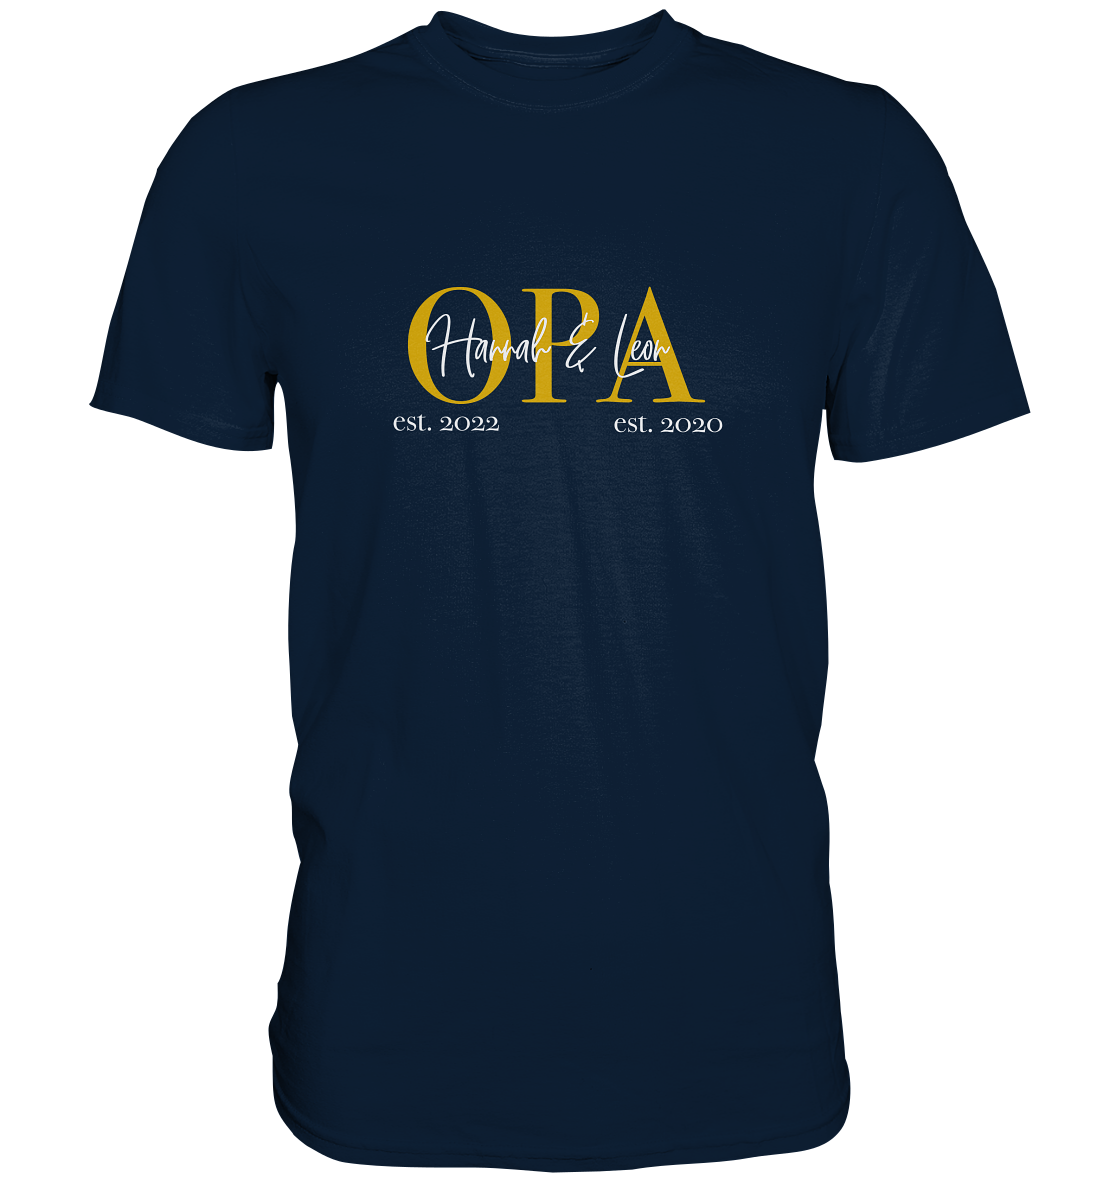 Ein Opa T-Shirt mit minimalistischem Design von ShirtDesire. Personalisierter Druck, hochwertige Materialien. Perfekt für stolze Opas, die ihren eigenen Stil ausdrücken möchten.